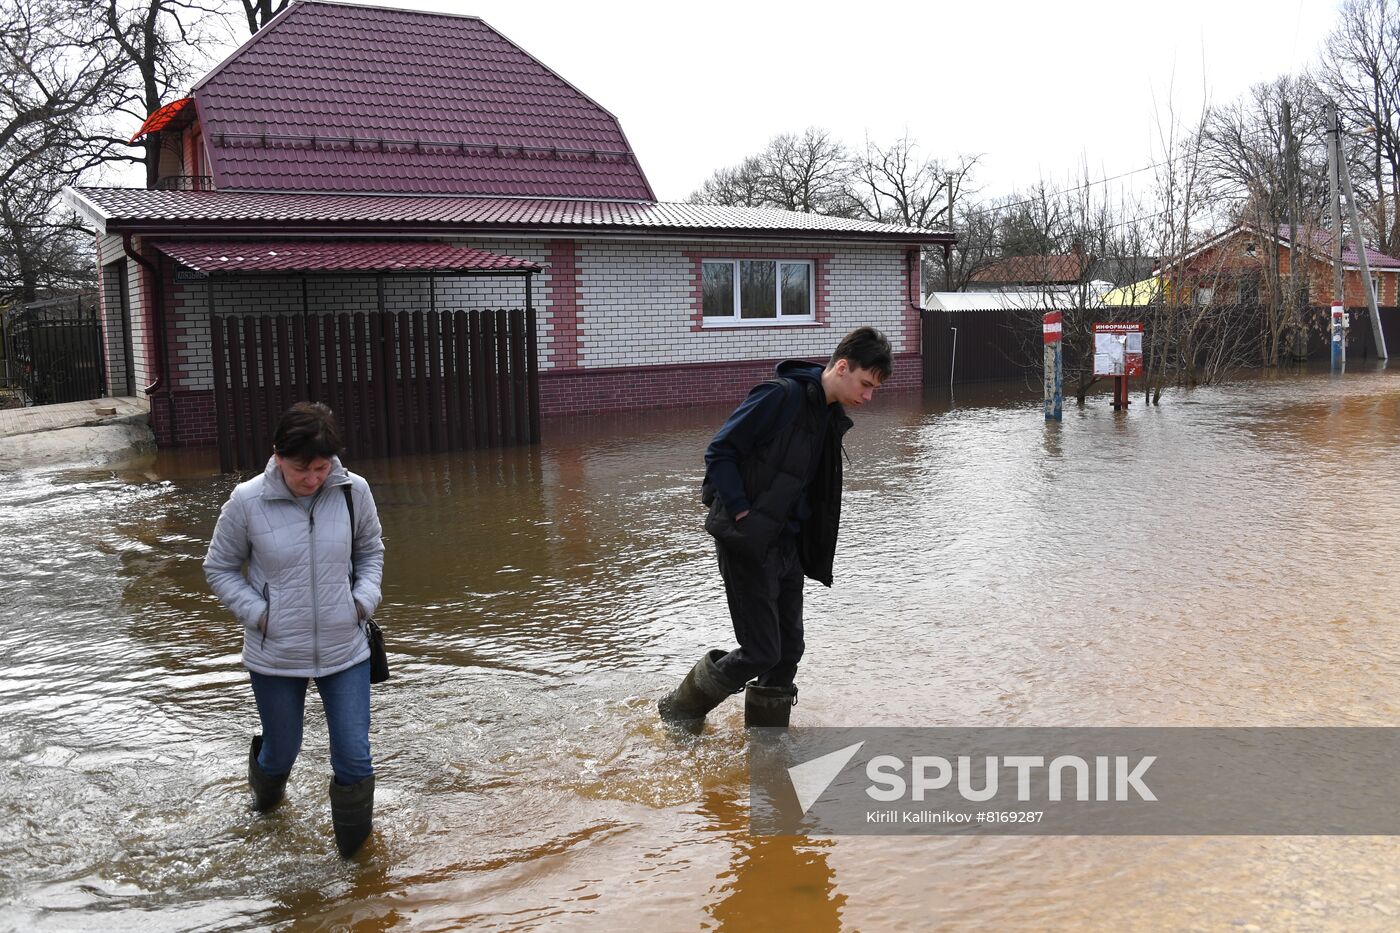 Russia Spring Flood | Sputnik Mediabank